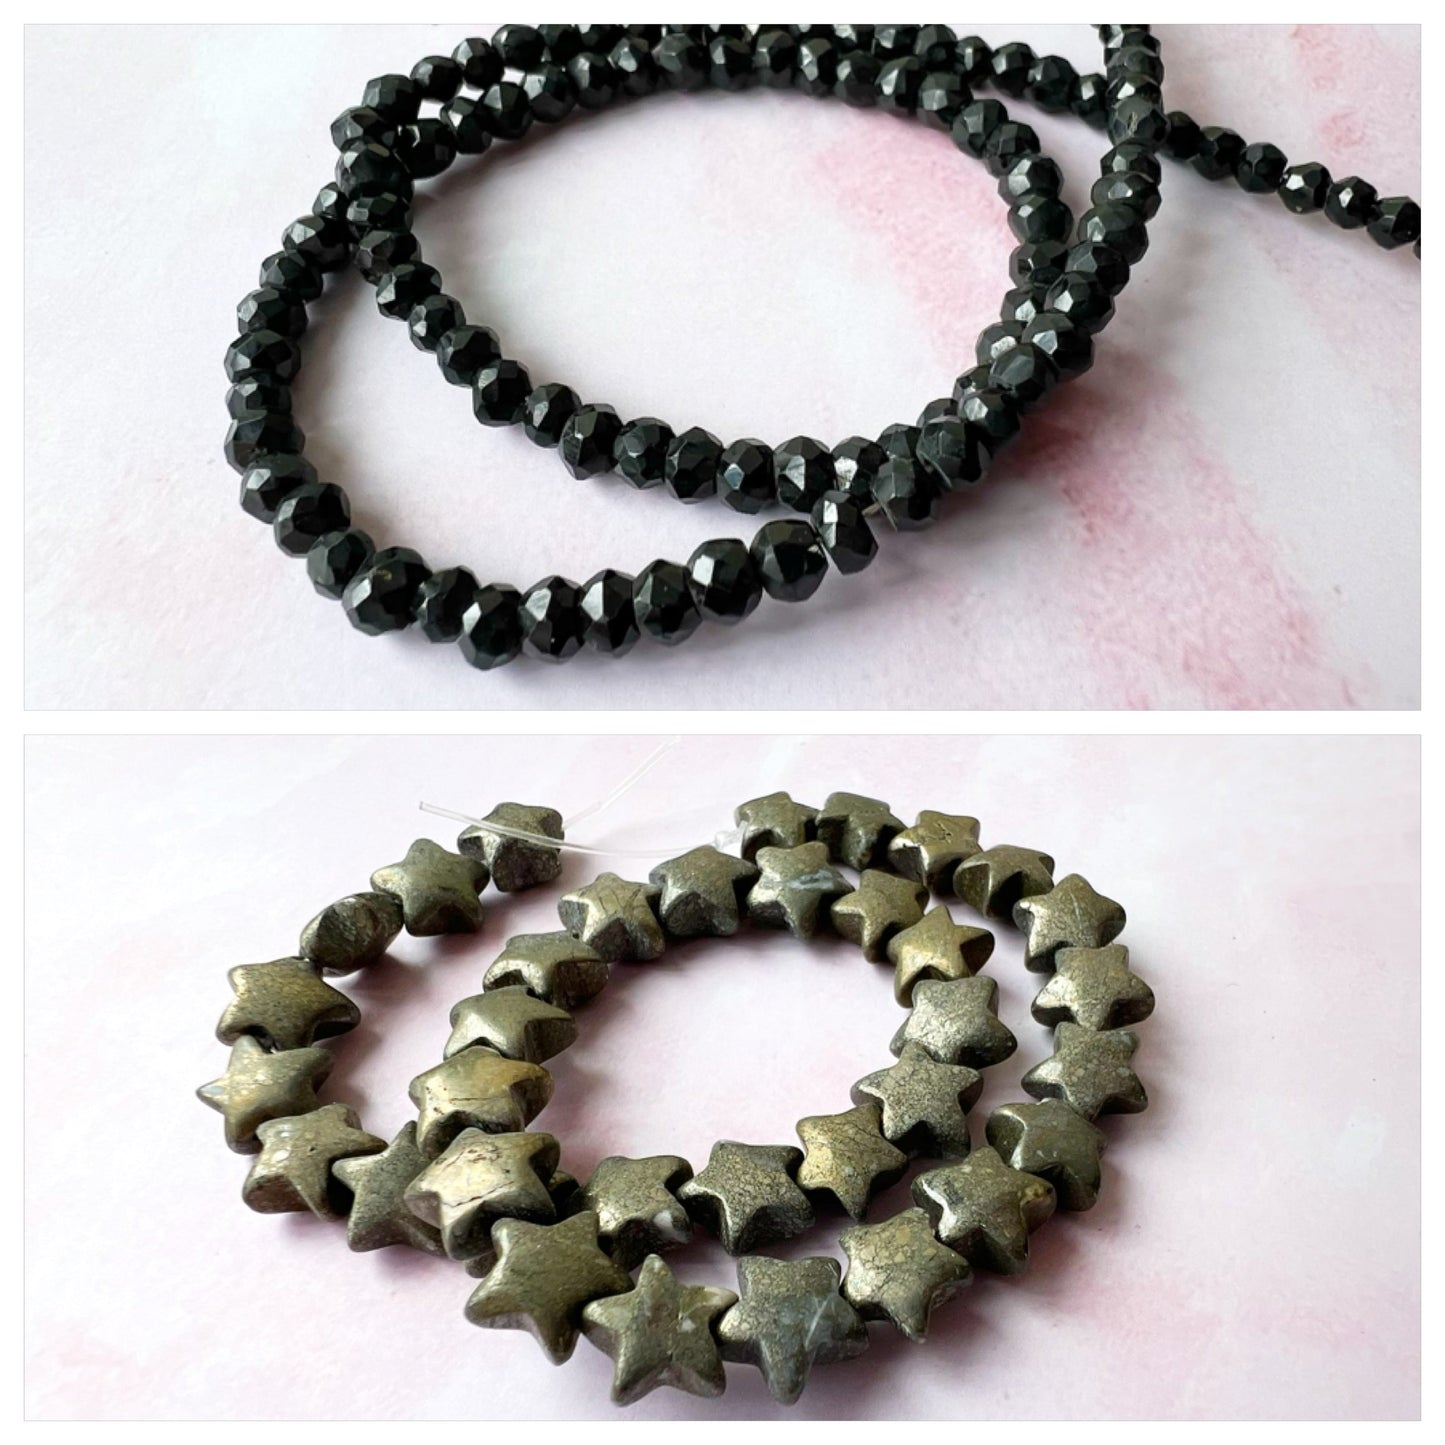 ROSE GOLD - Black Spinel Customisable bracelets